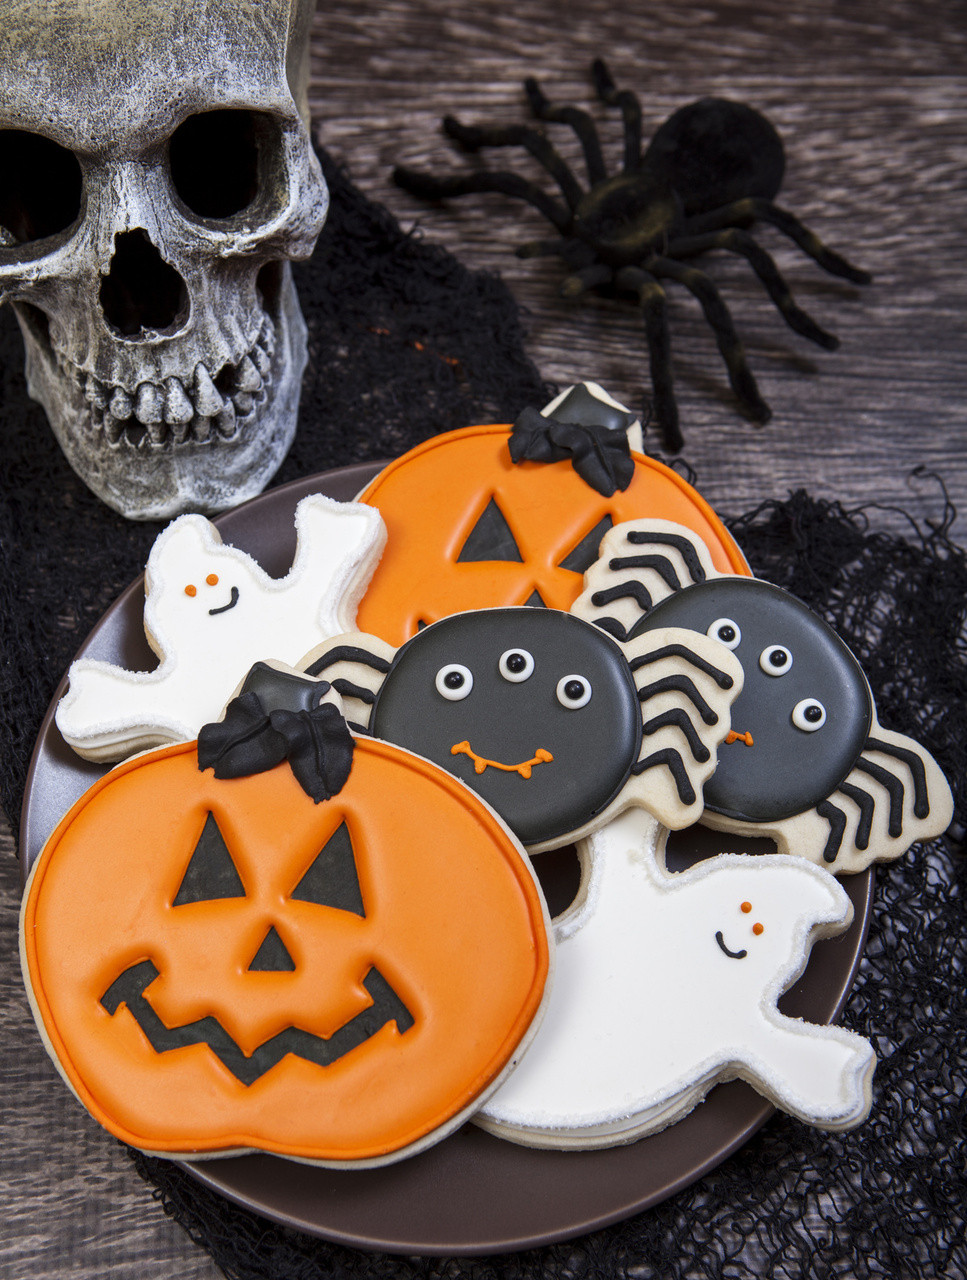 Halloween Cookies Decorating
 Spooky Cookie Halloween Cookie Decorations